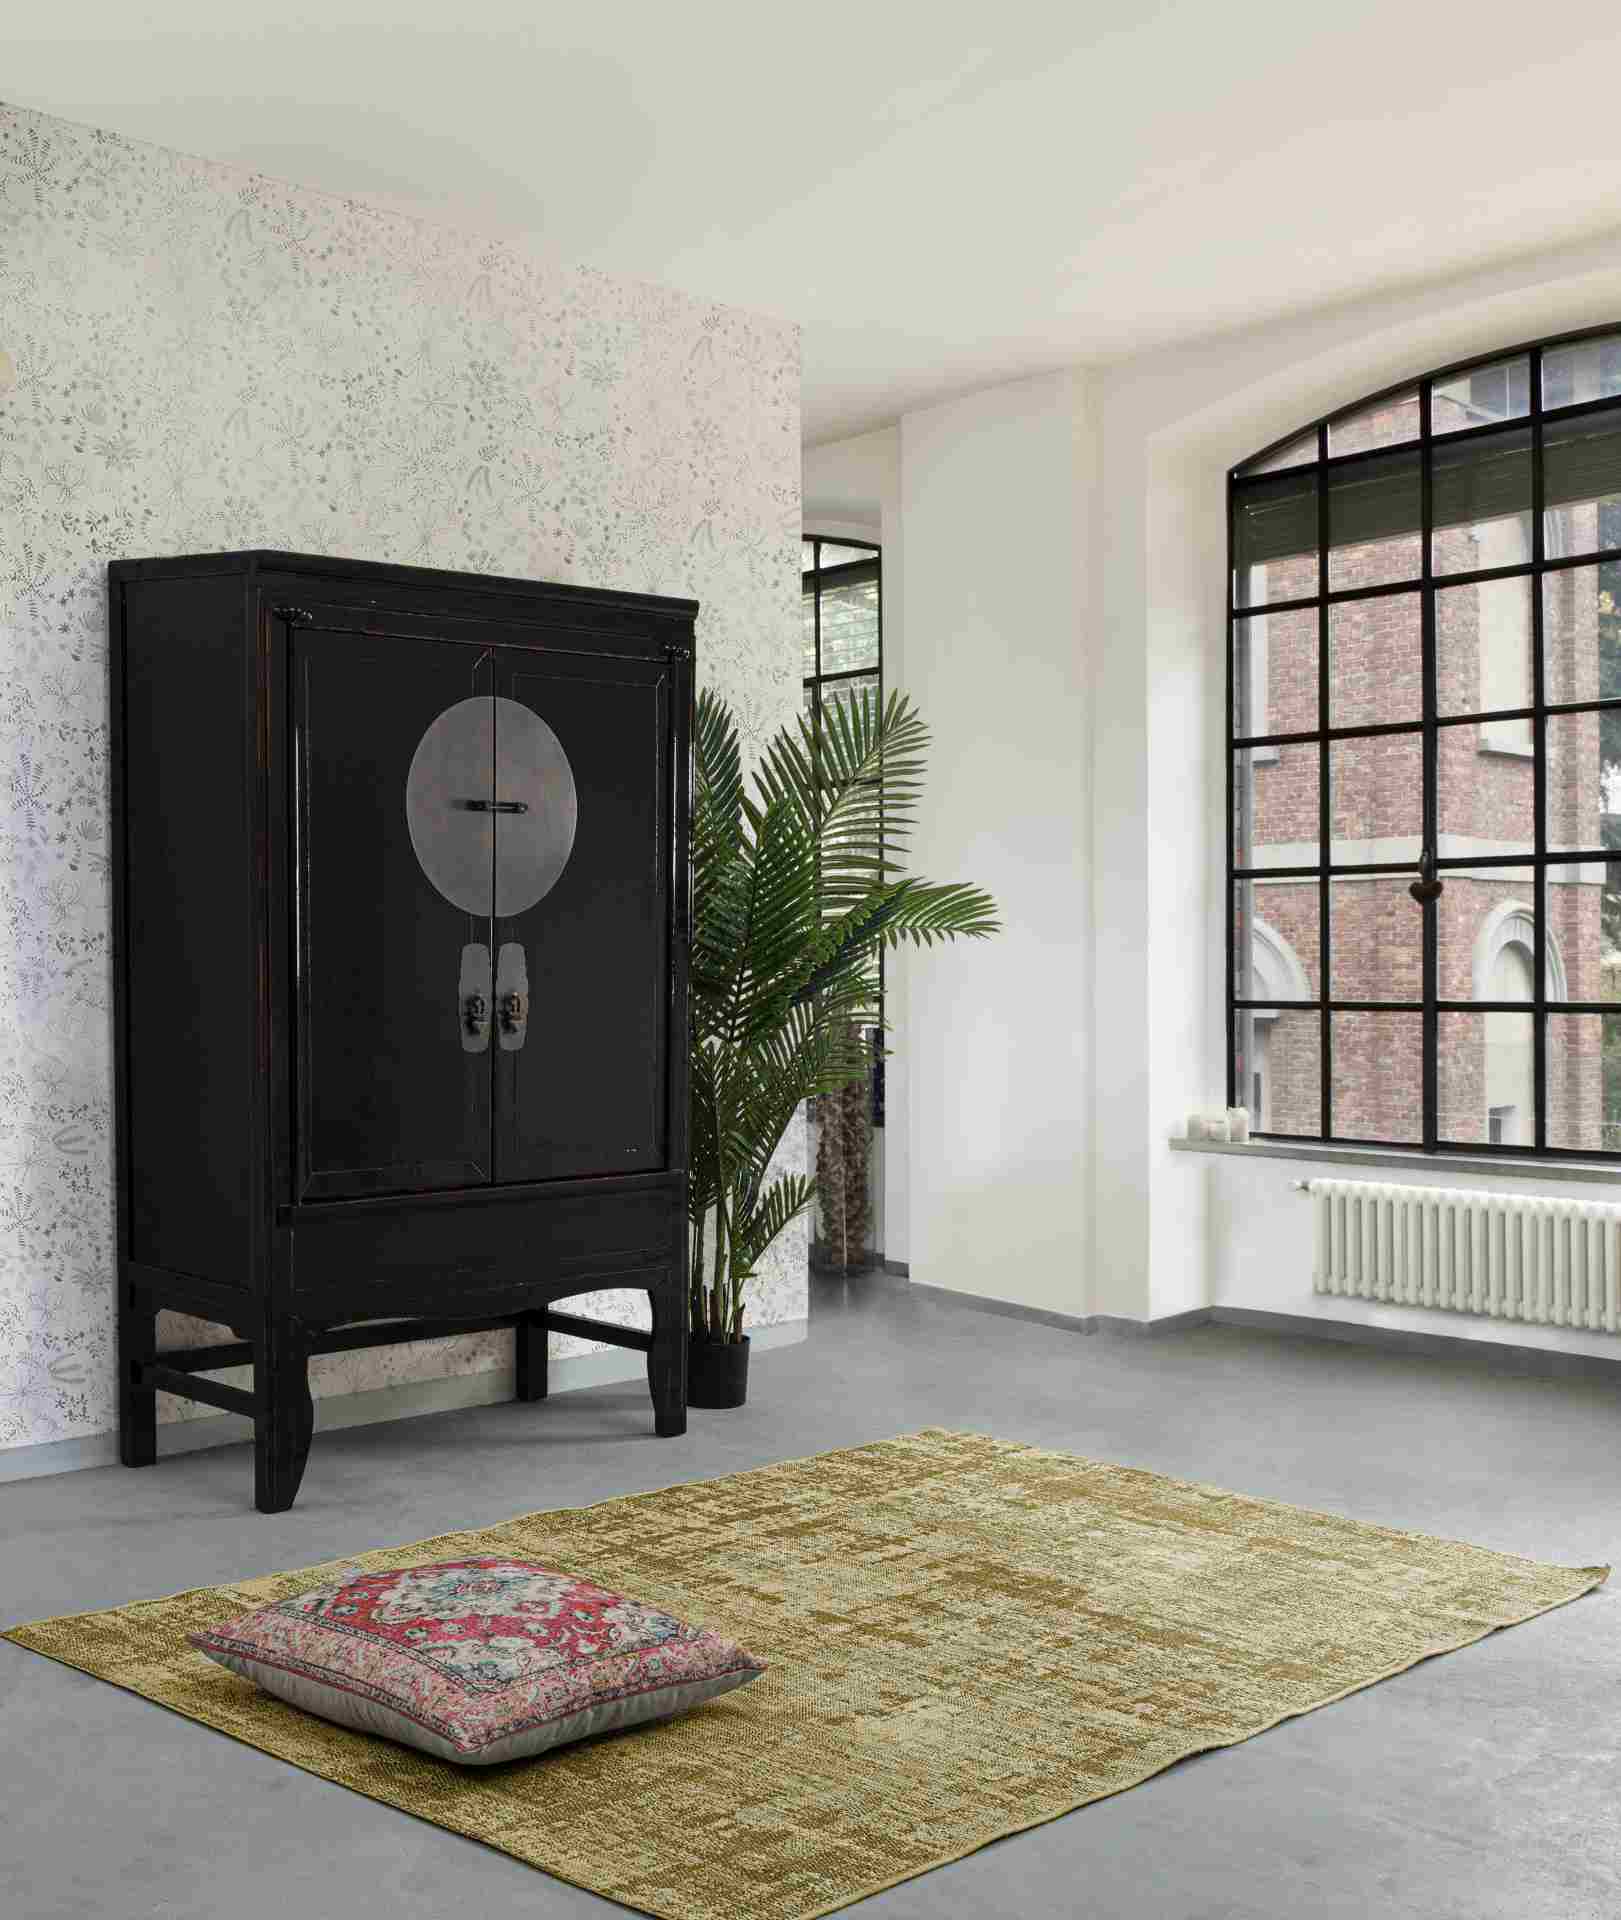 Der Schrank Jinan überzeugt mit seinem klassischen Design. Gefertigt wurde er aus recyceltem Ulmenholz, welches einen schwarzen Farbton besitzt. Das Gestell ist auch aus Ulmenholz. Der Schrank verfügt über zwei Türen. Die Breite beträgt 108 cm.